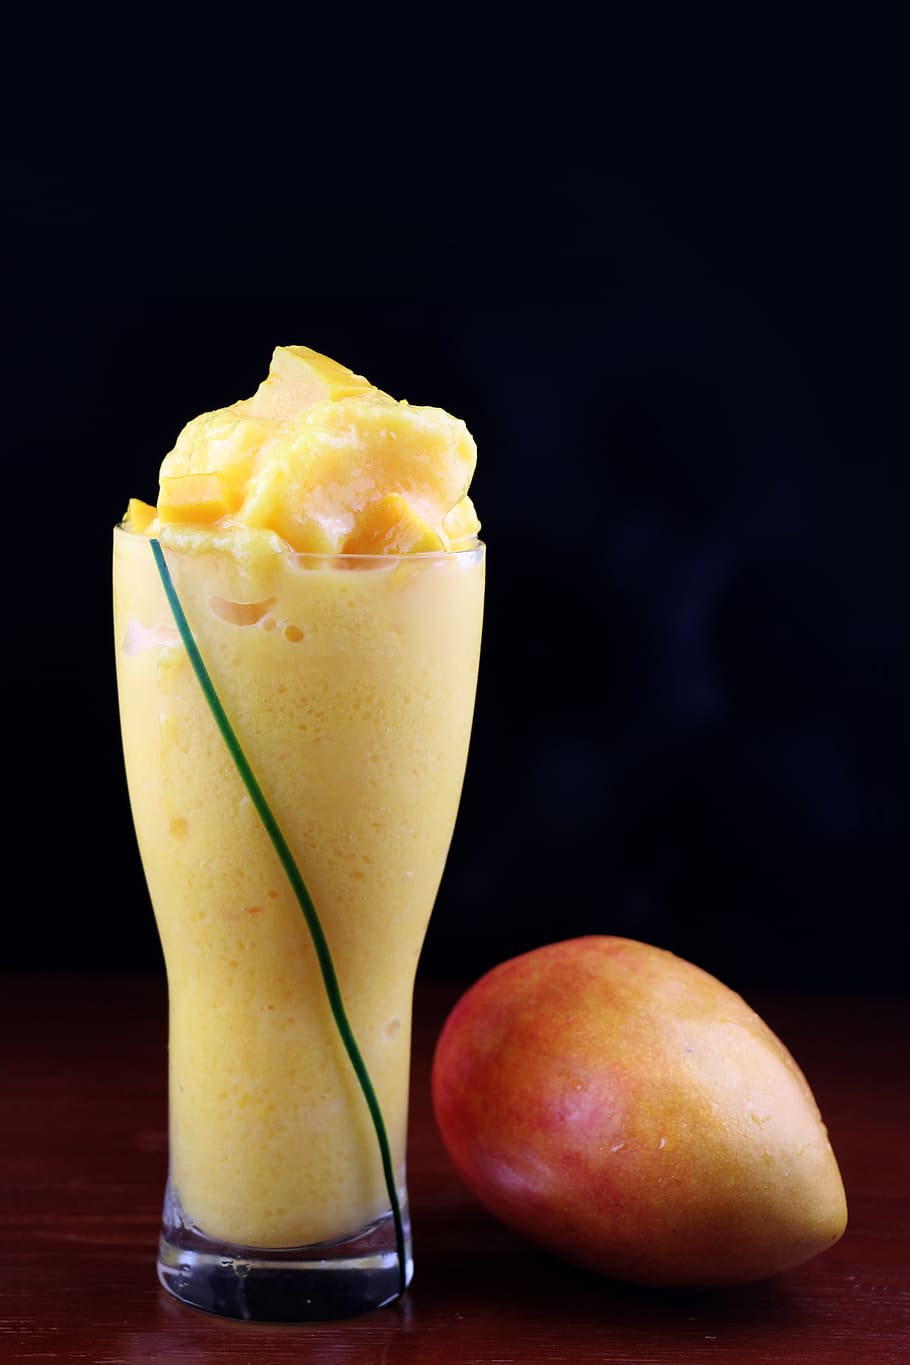 Mango Shake Images Stock Photos  Vectors  Shutterstock  Mango drinks Mango  smoothie Mango